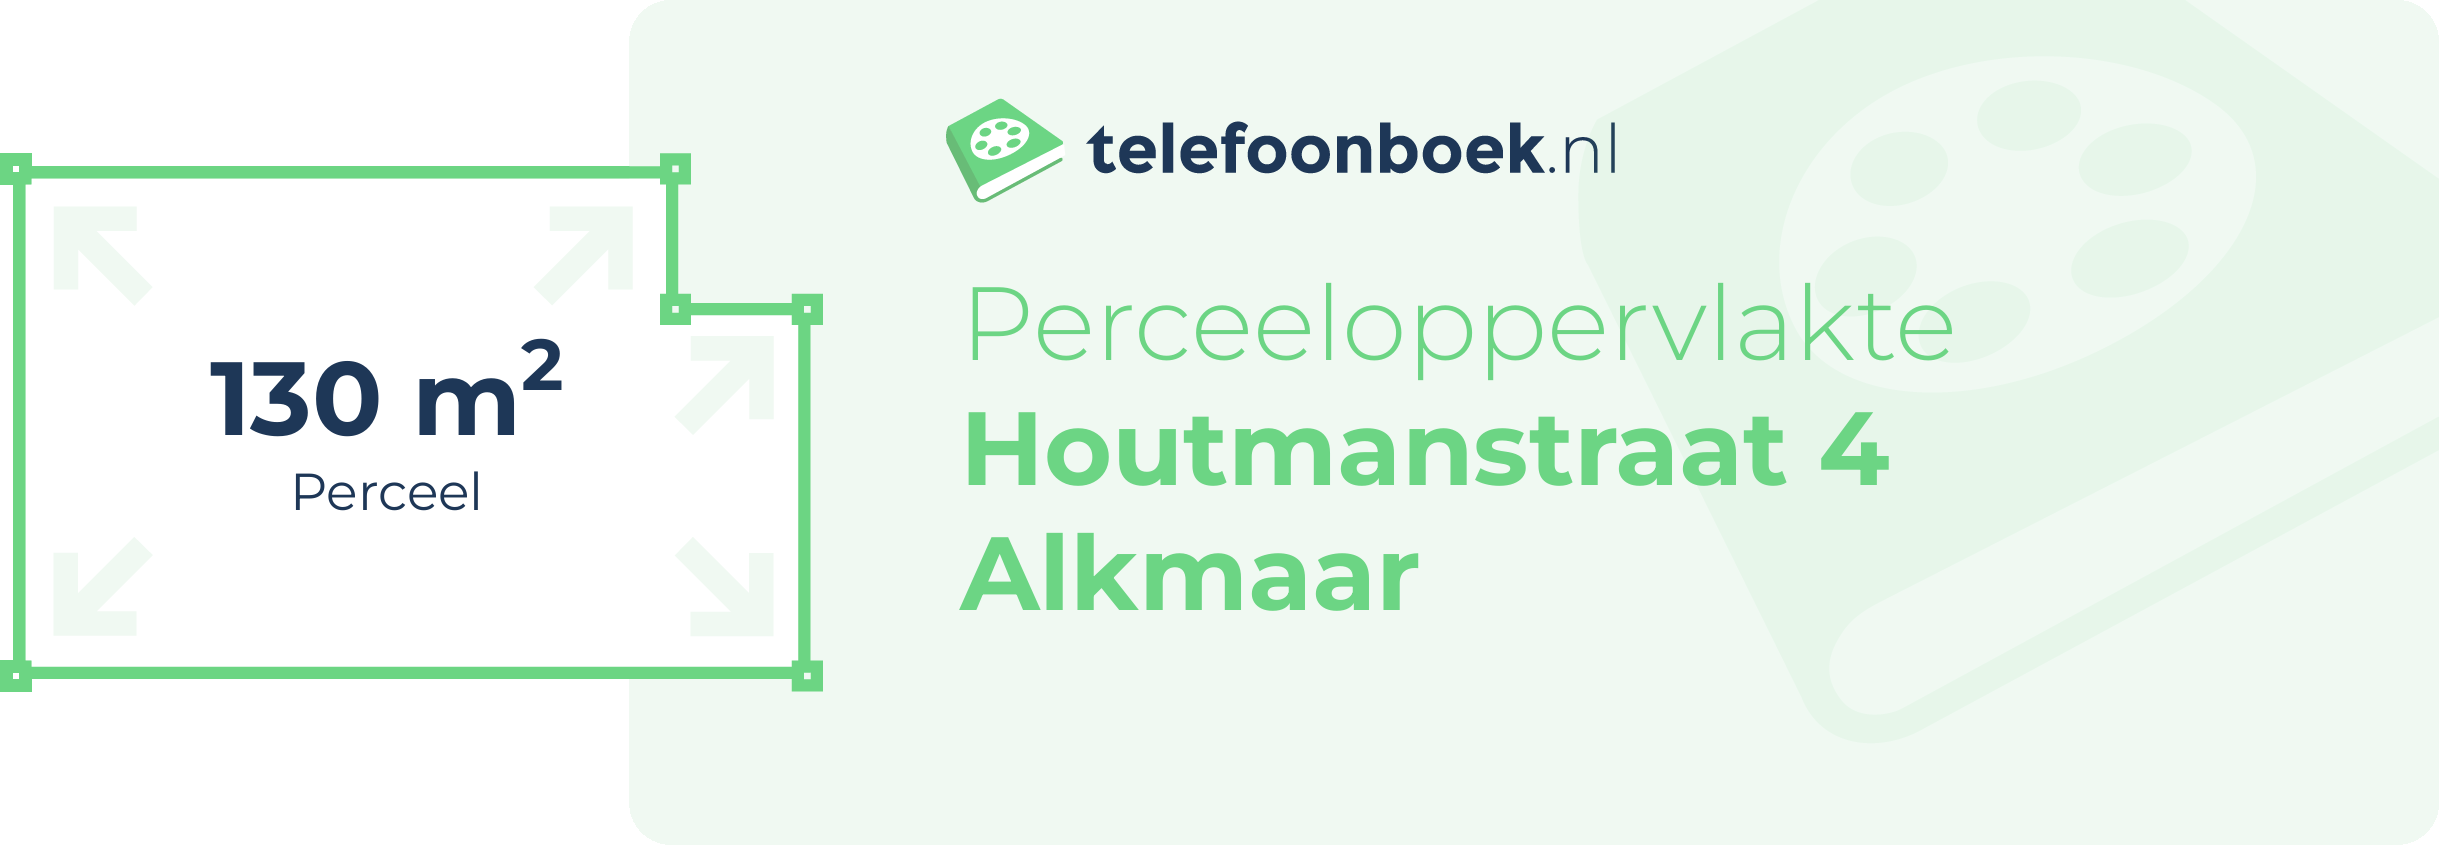 Perceeloppervlakte Houtmanstraat 4 Alkmaar